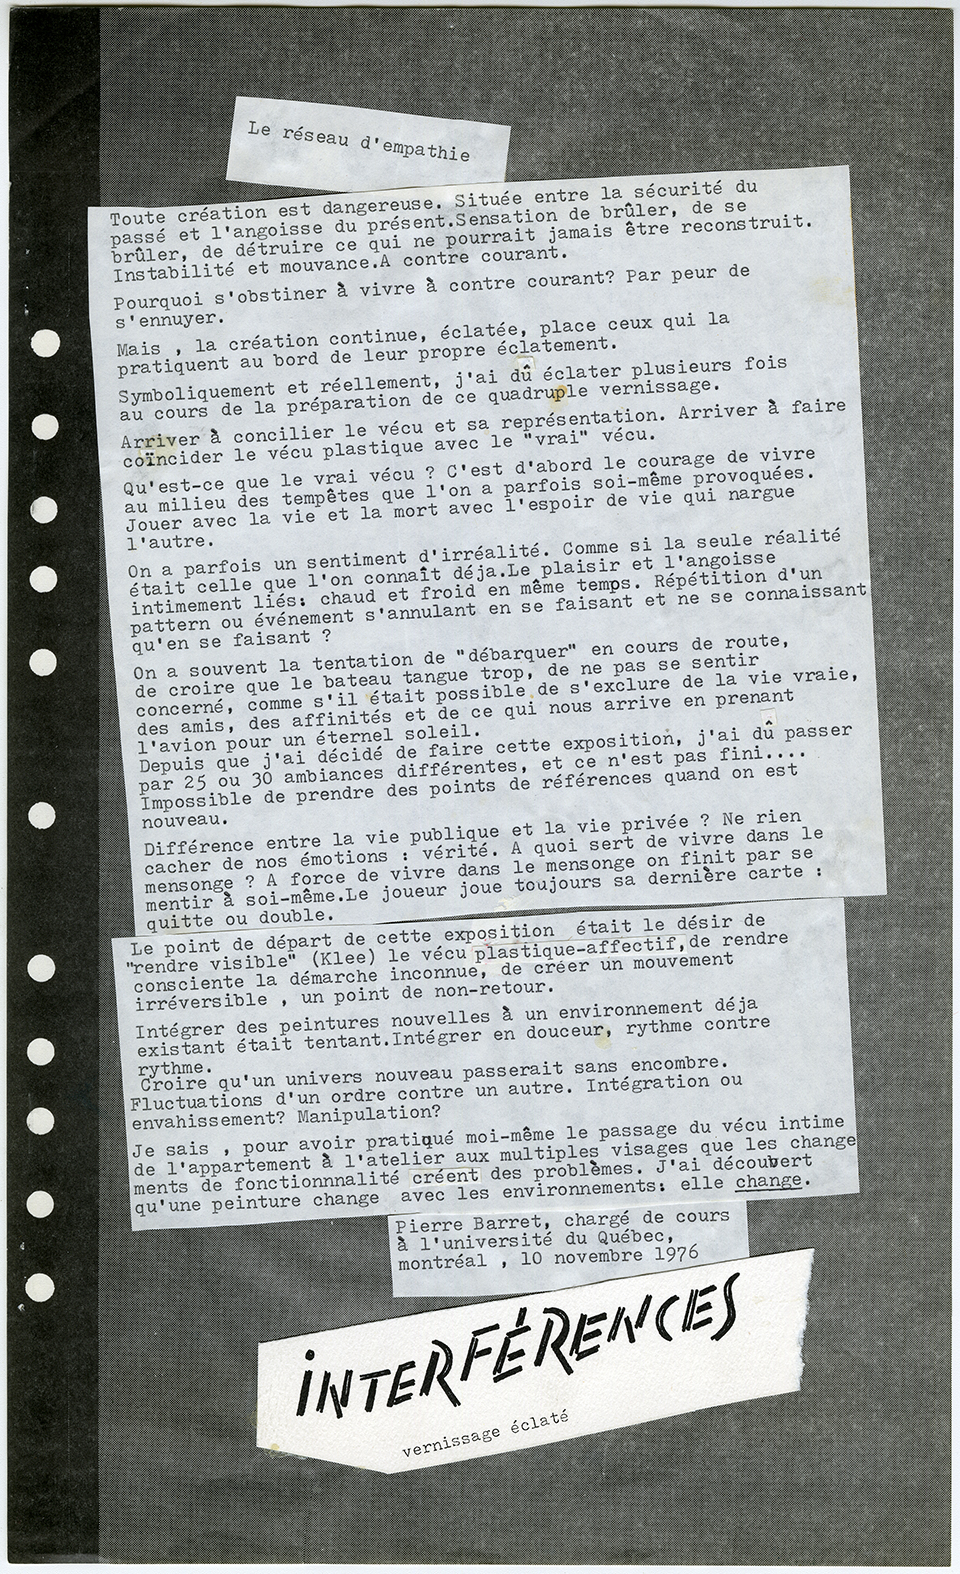 Texte de l’exposition Interférences, 10 novembre 1976. Archives UdeM, P0468-G-D0002